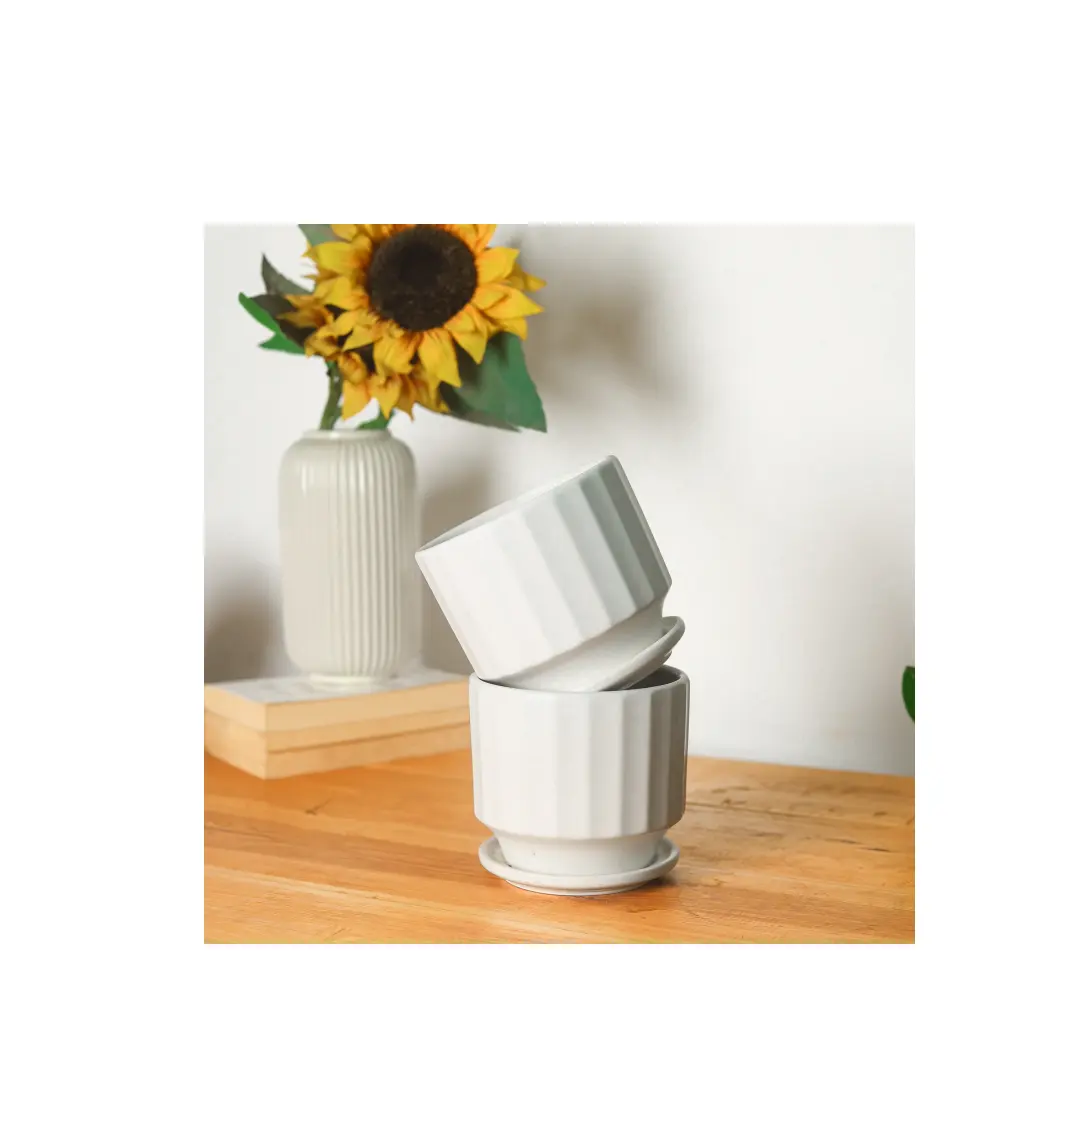 Ceramic Porcelain Flower Vase For Home Decoration Handicrafts Creative Vase for kitchenware table top decorative